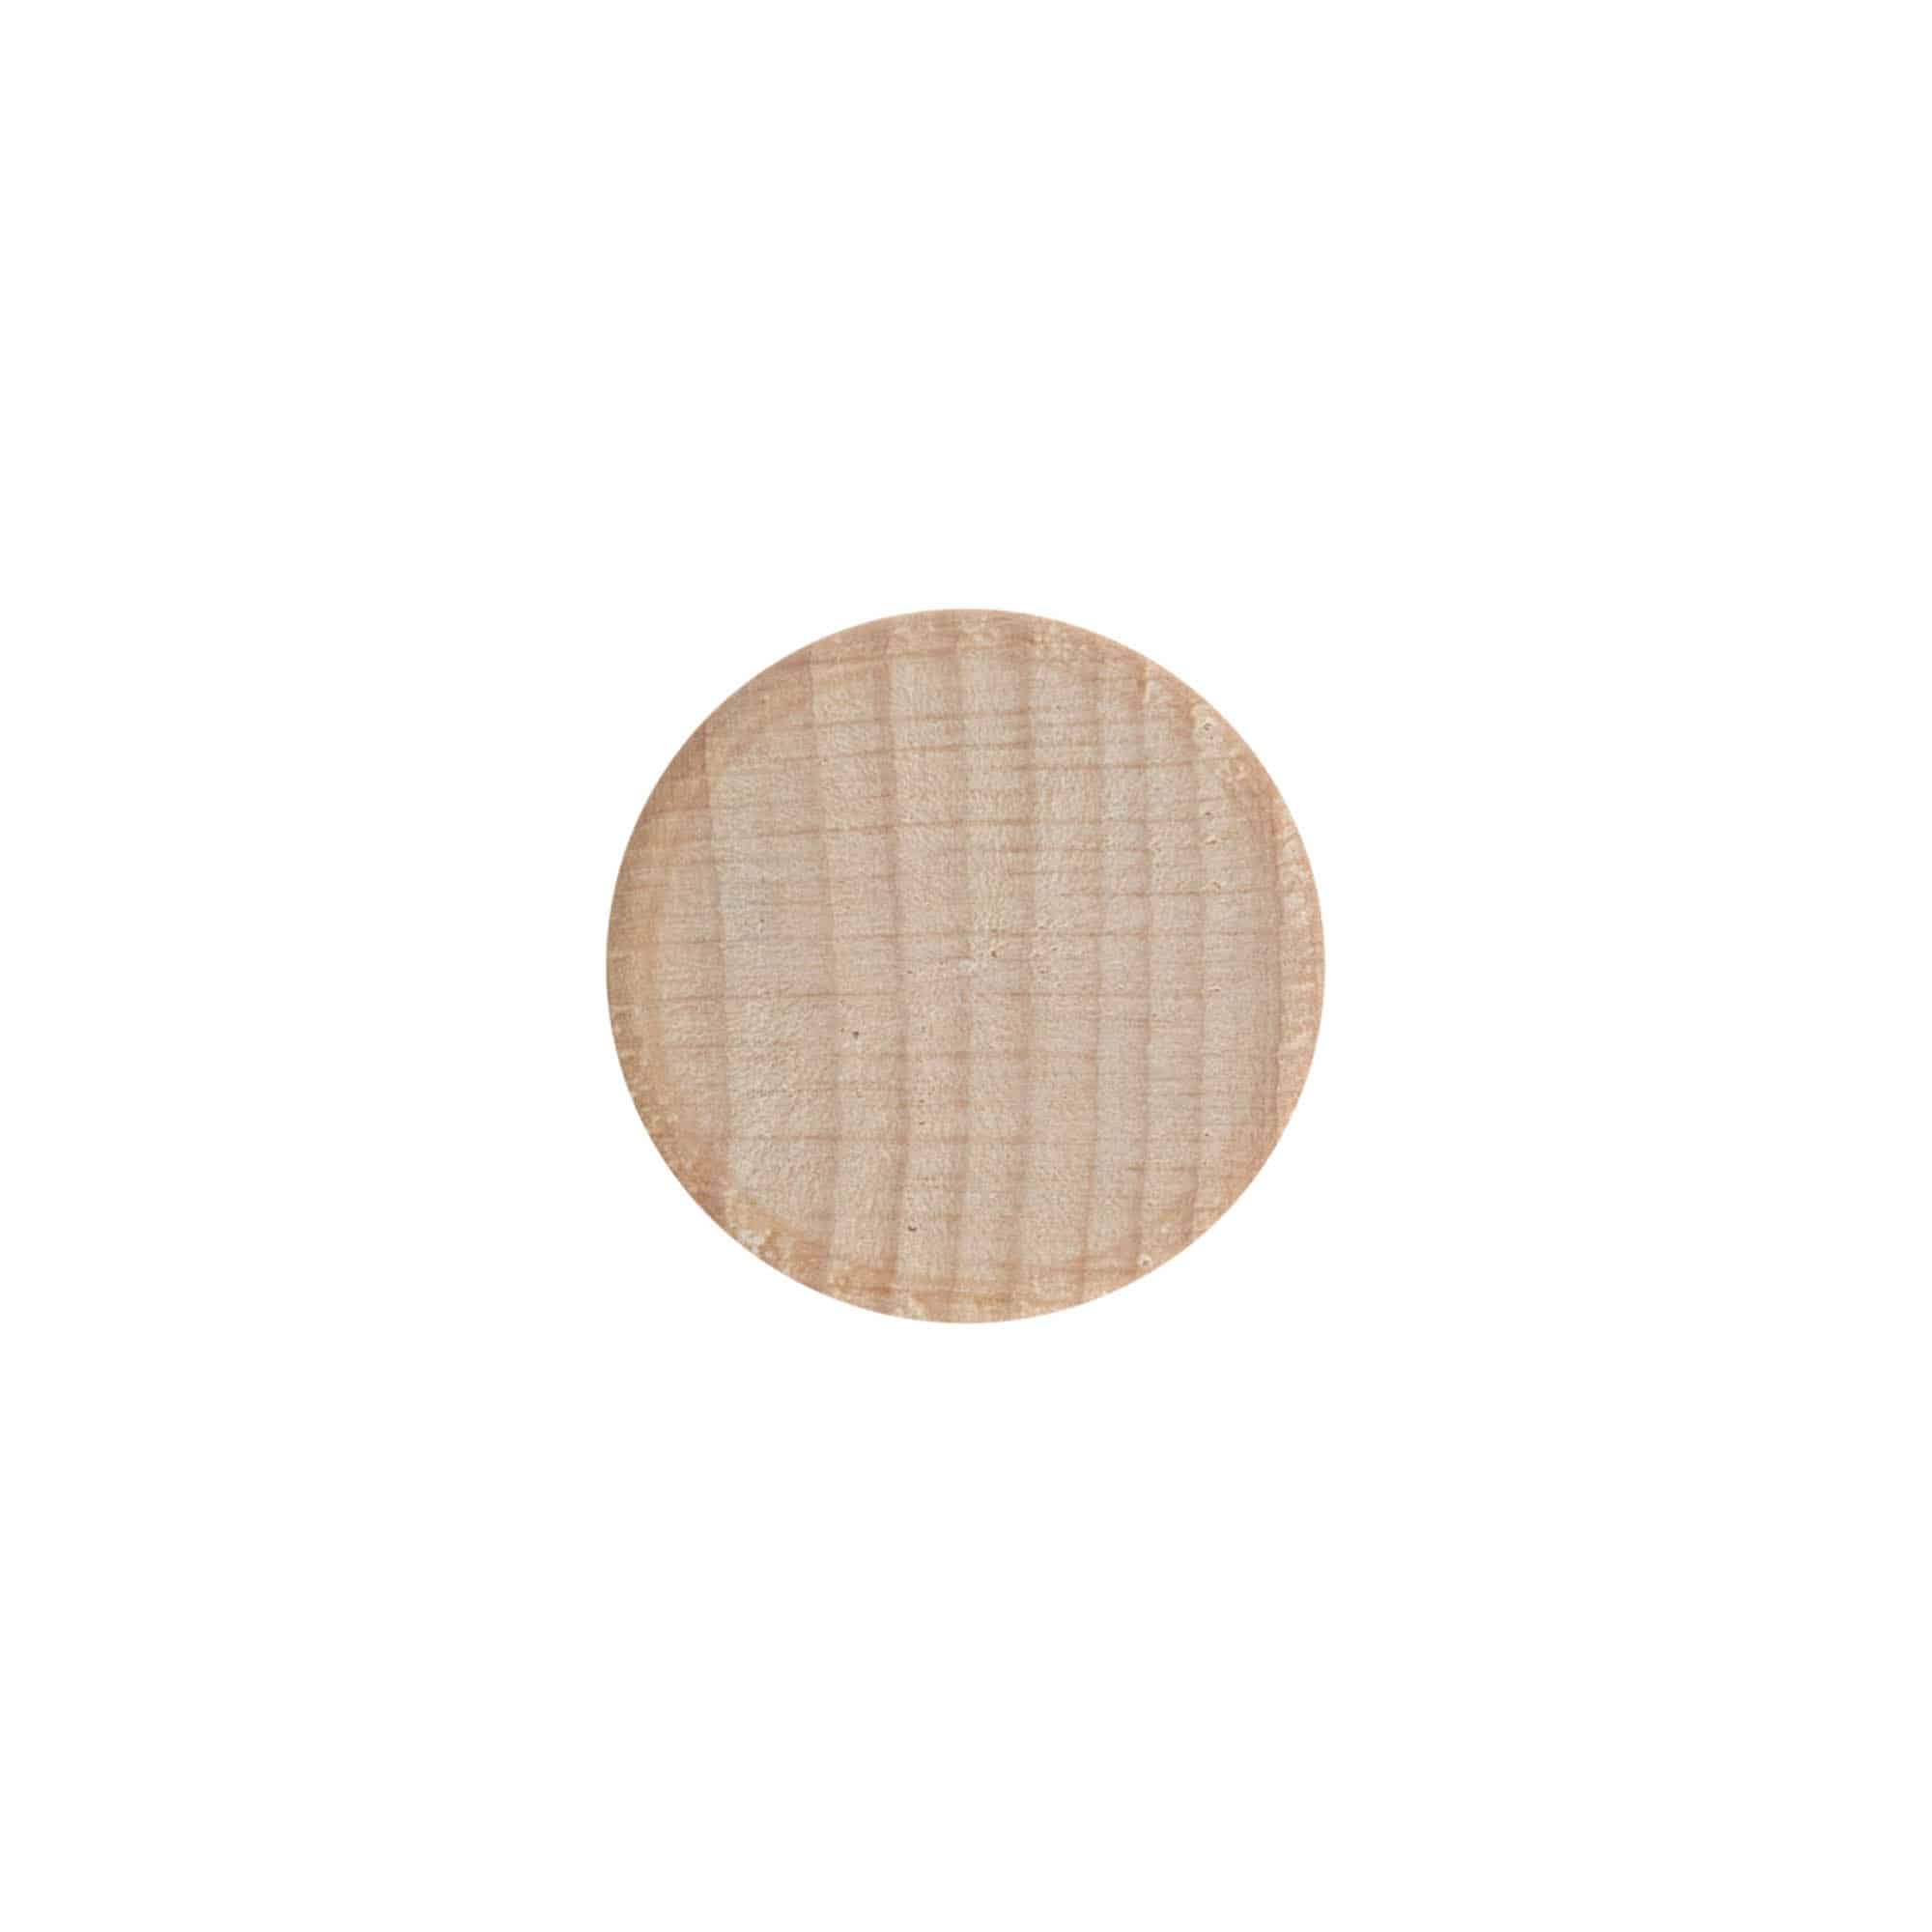 Šroubovací uzávěr, dřevo, béžový, pro ústí: GPI 28/400